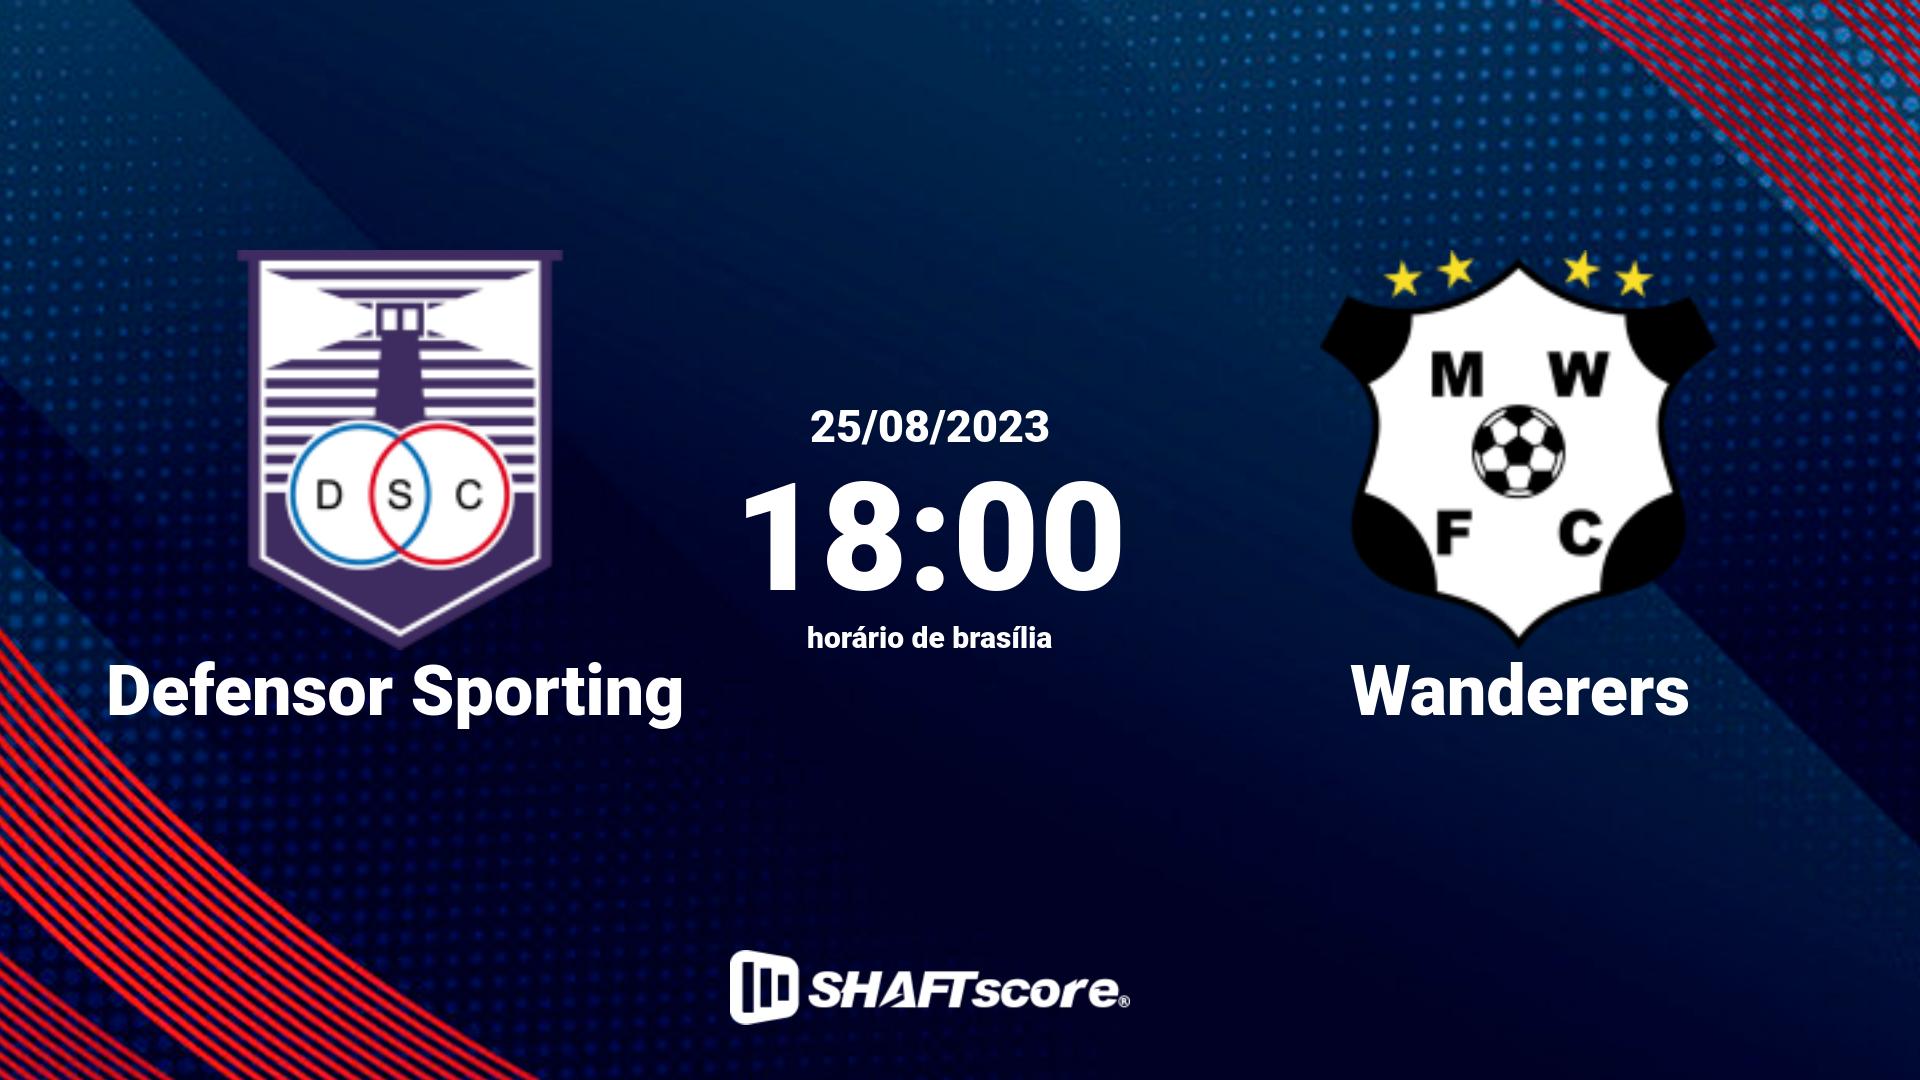 Estatísticas do jogo Defensor Sporting vs Wanderers 25.08 18:00